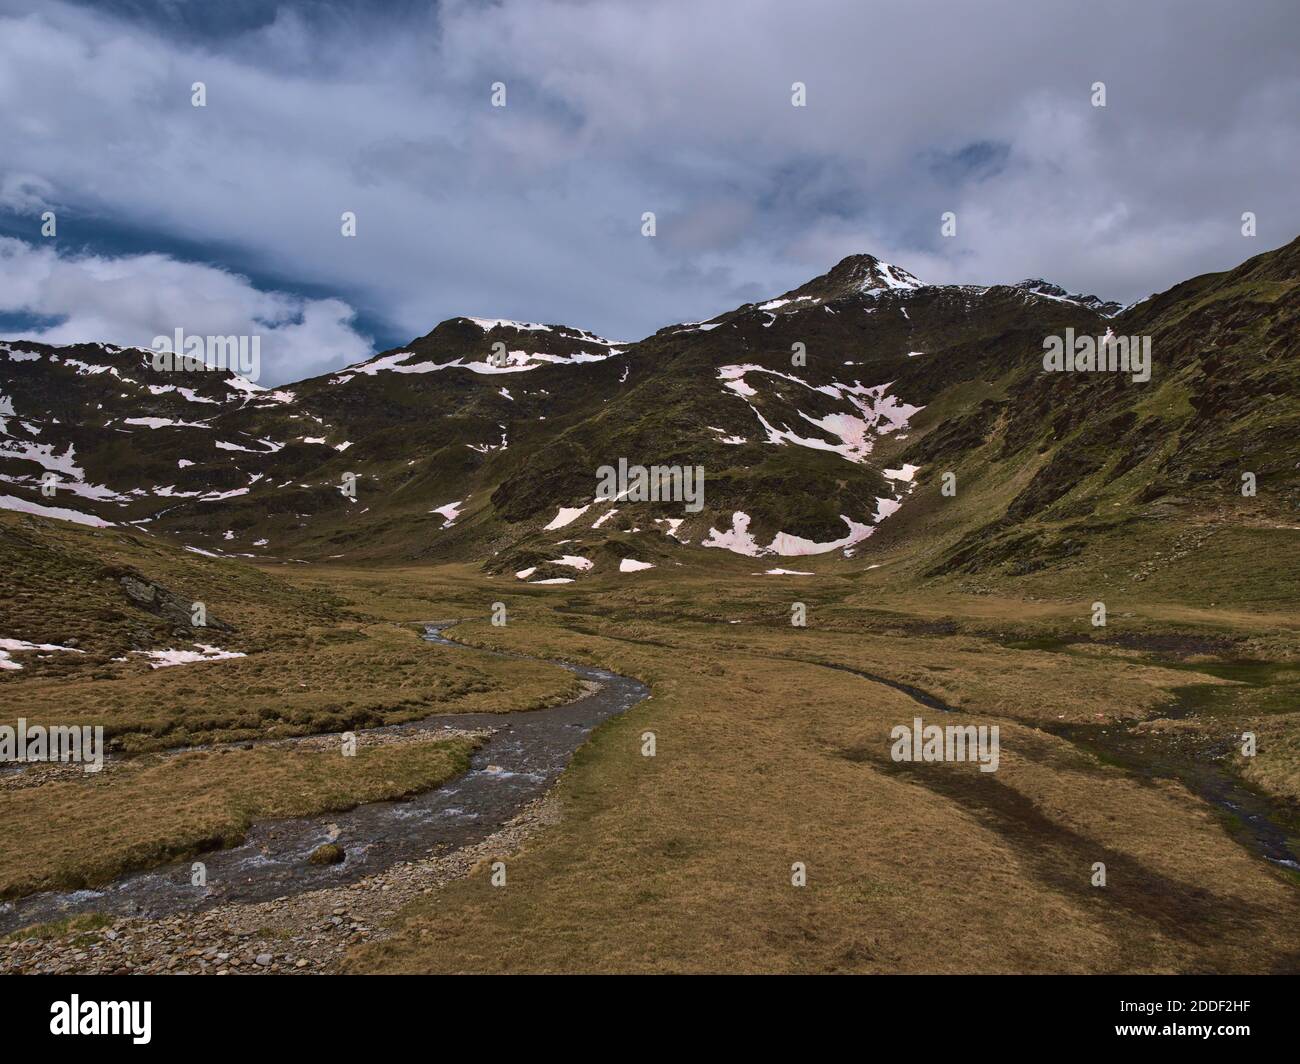 Karge Berglandschaft im Frühsommer mit Dampf aus Schmelzwasser, Wiesen und dem schneebedeckten Gipfel des Großen Degenhorns (2.946m) in den Alpen. Stockfoto